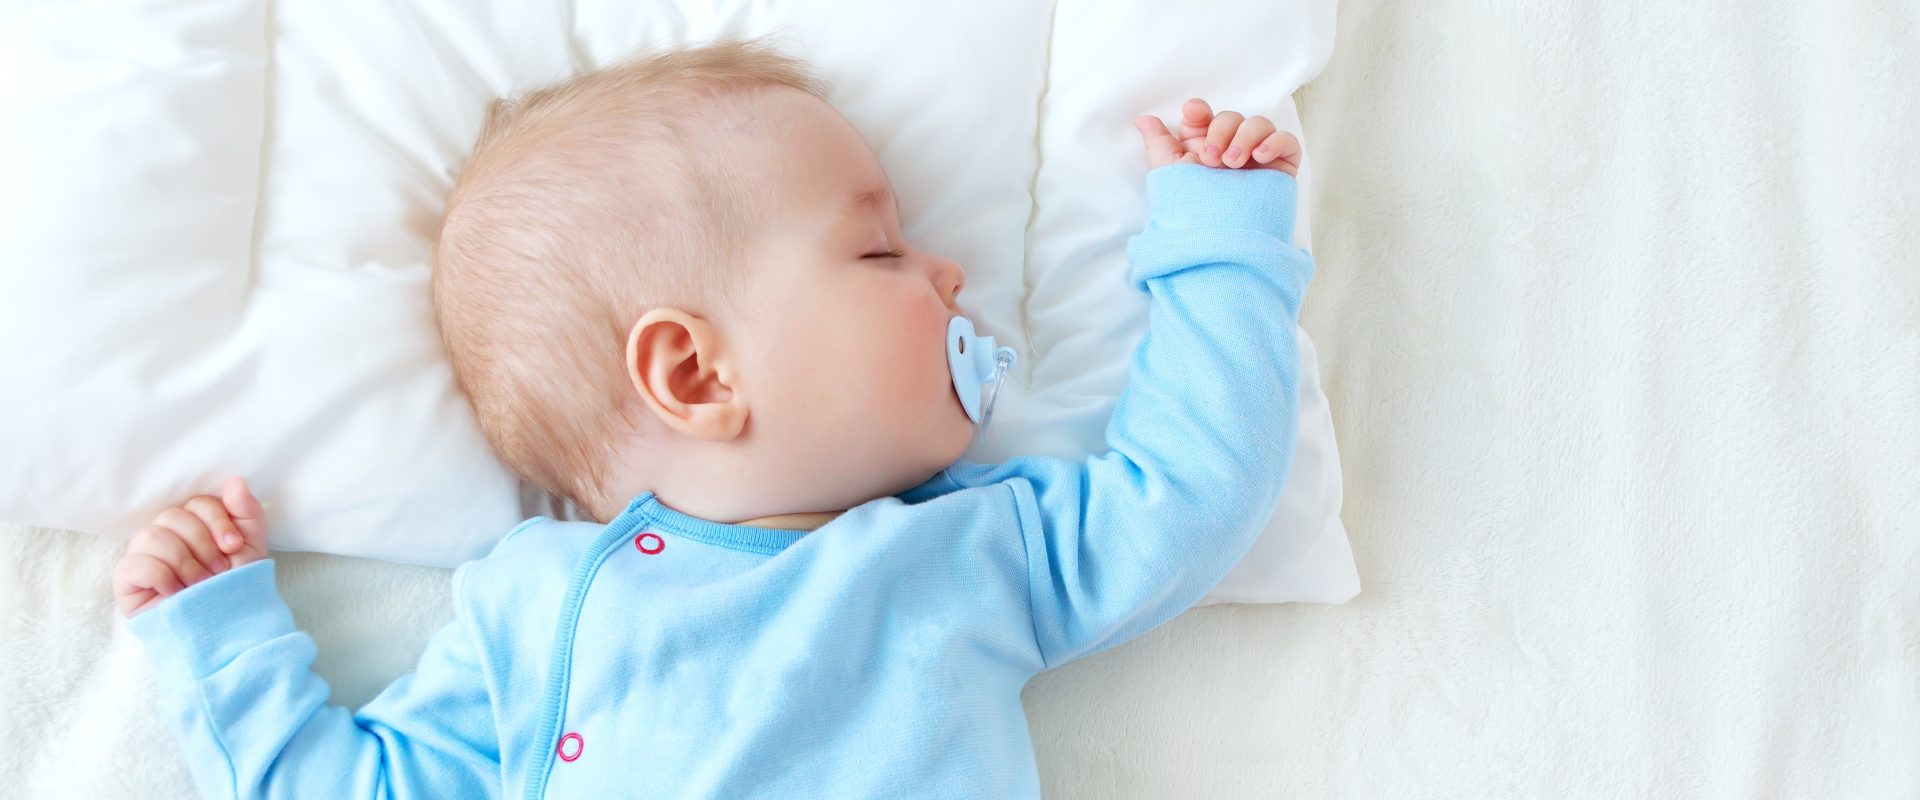 Sen niemowlaka - ile śpi niemowlę? Niemowlak w błękitnym body śpi ze smoczkiem w buzi w białej pościeli.